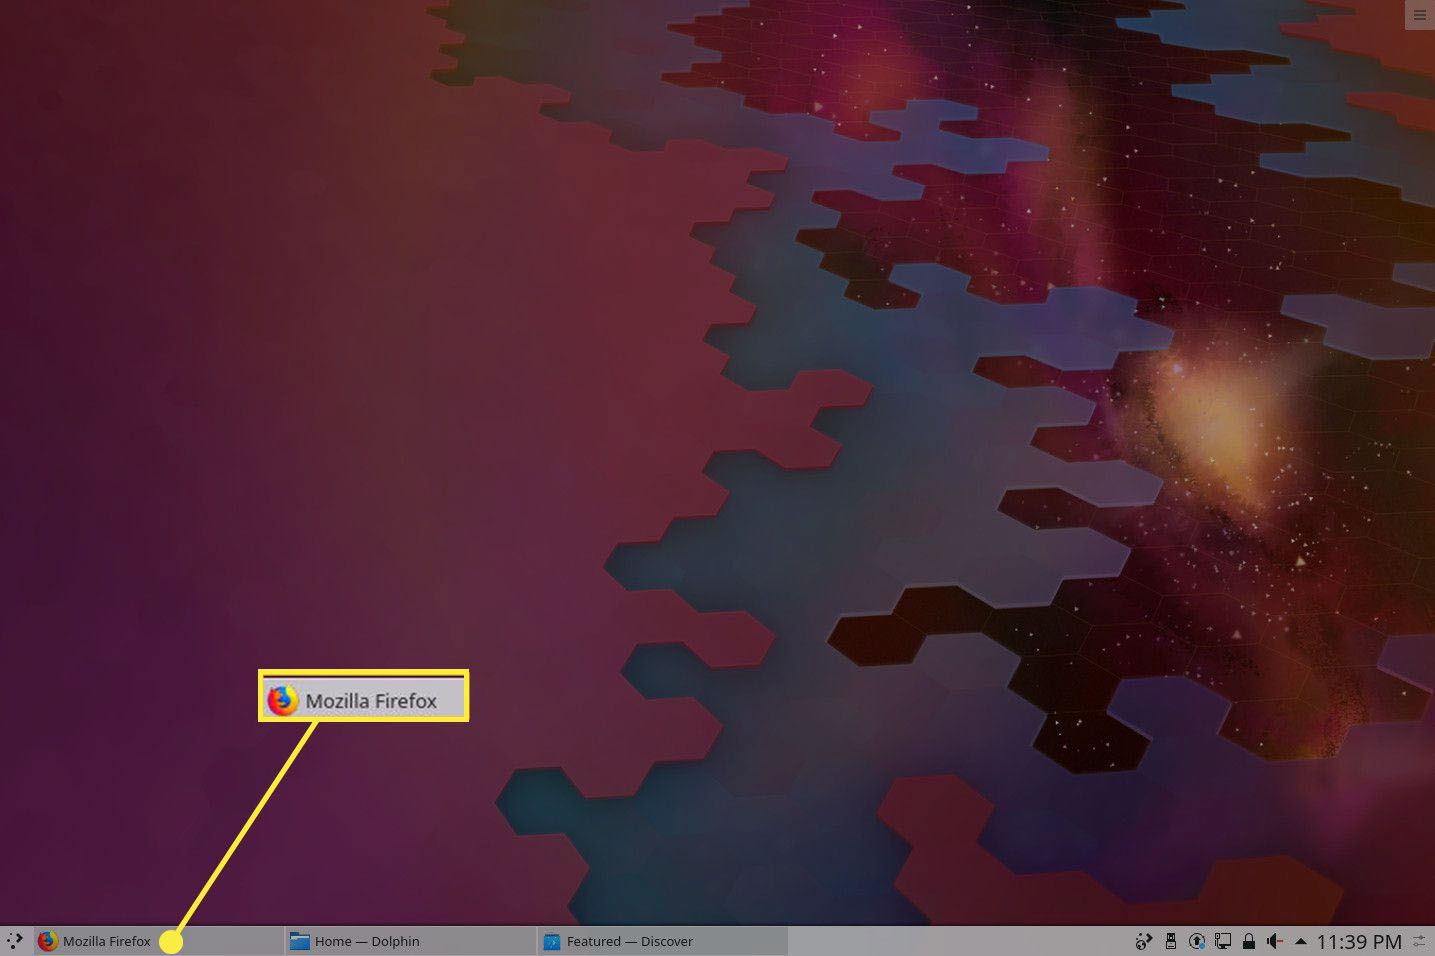 Geminimaliseerde app in KDE Plasma